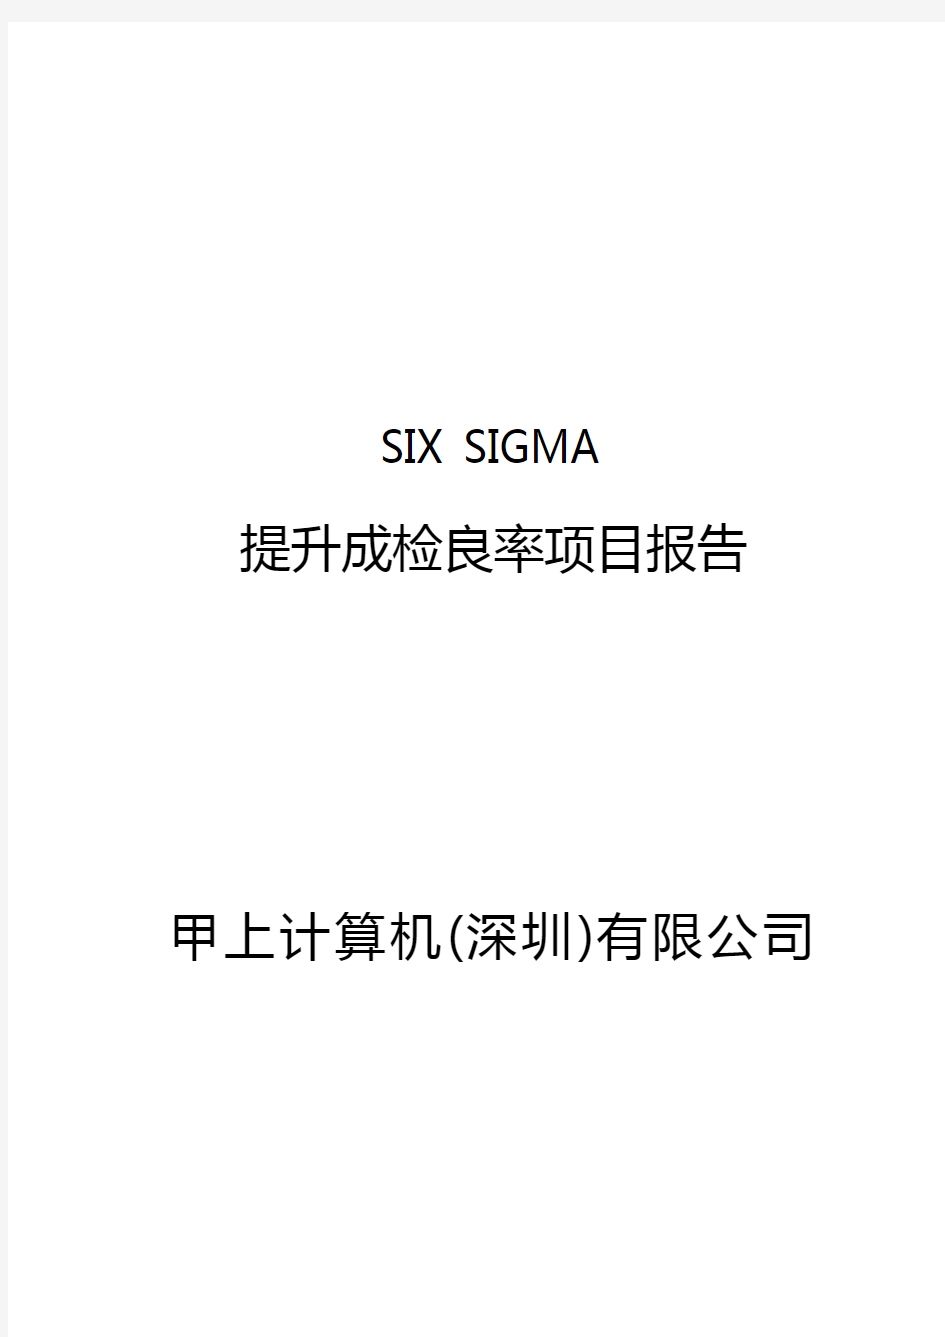 (六西格玛管理)SISIGMA专案改善案例(一).